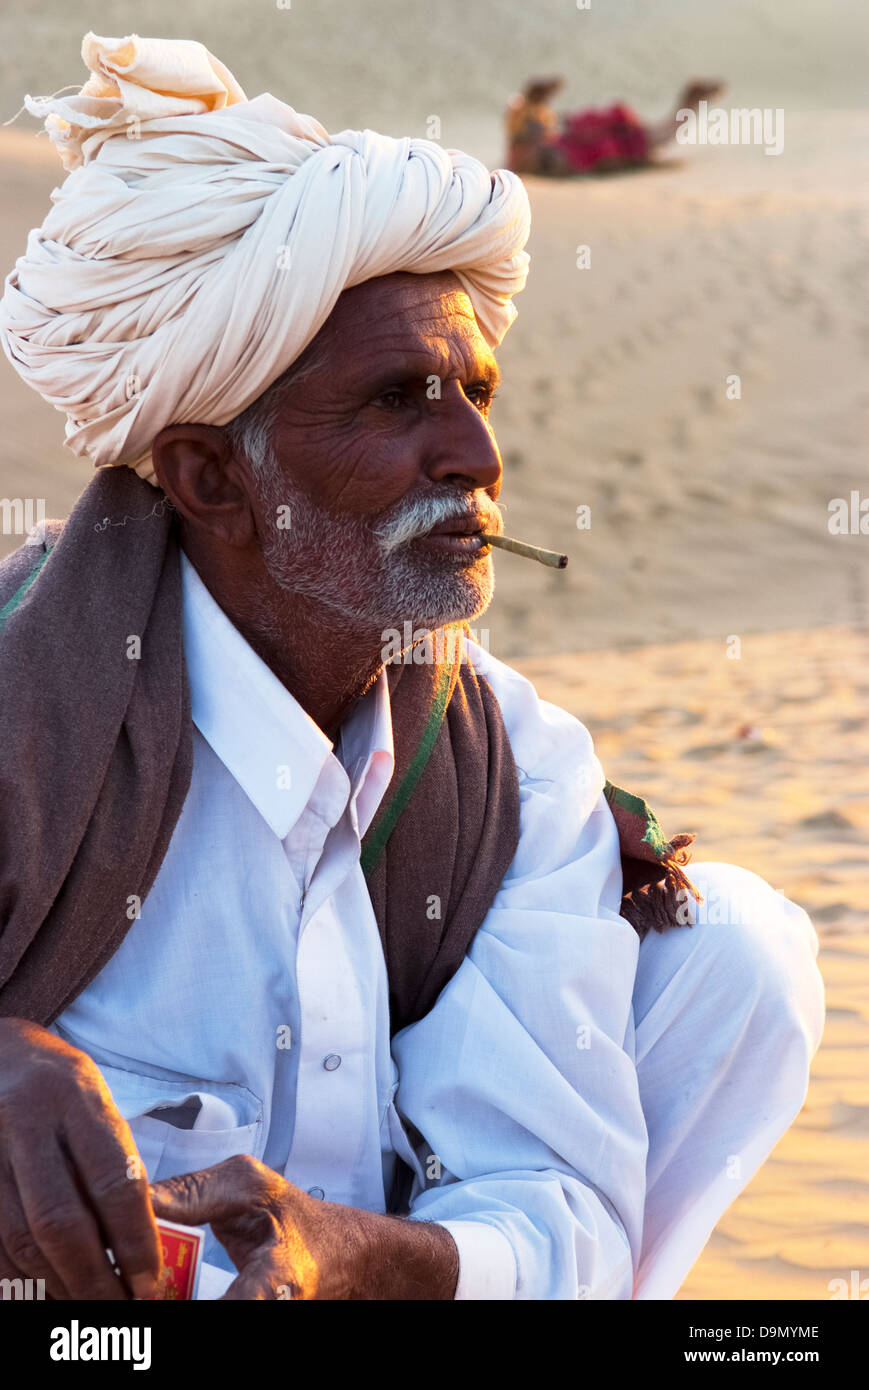 Un chamelier attend les touristes à la Dune de sable de Sam à Jaisalmer, Inde. Banque D'Images